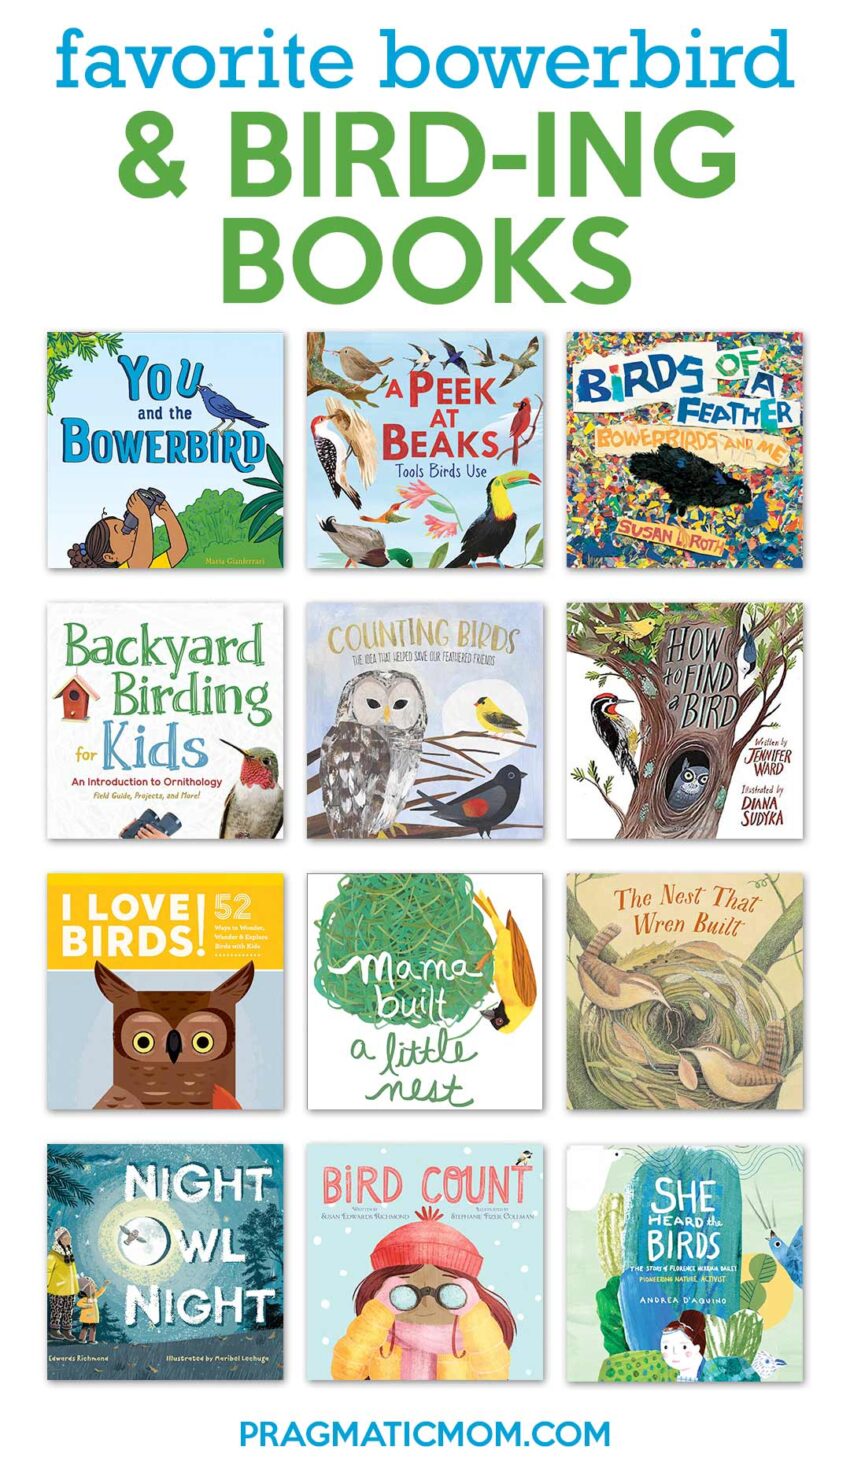 Favorite Bowerbird & Bird-ing Books